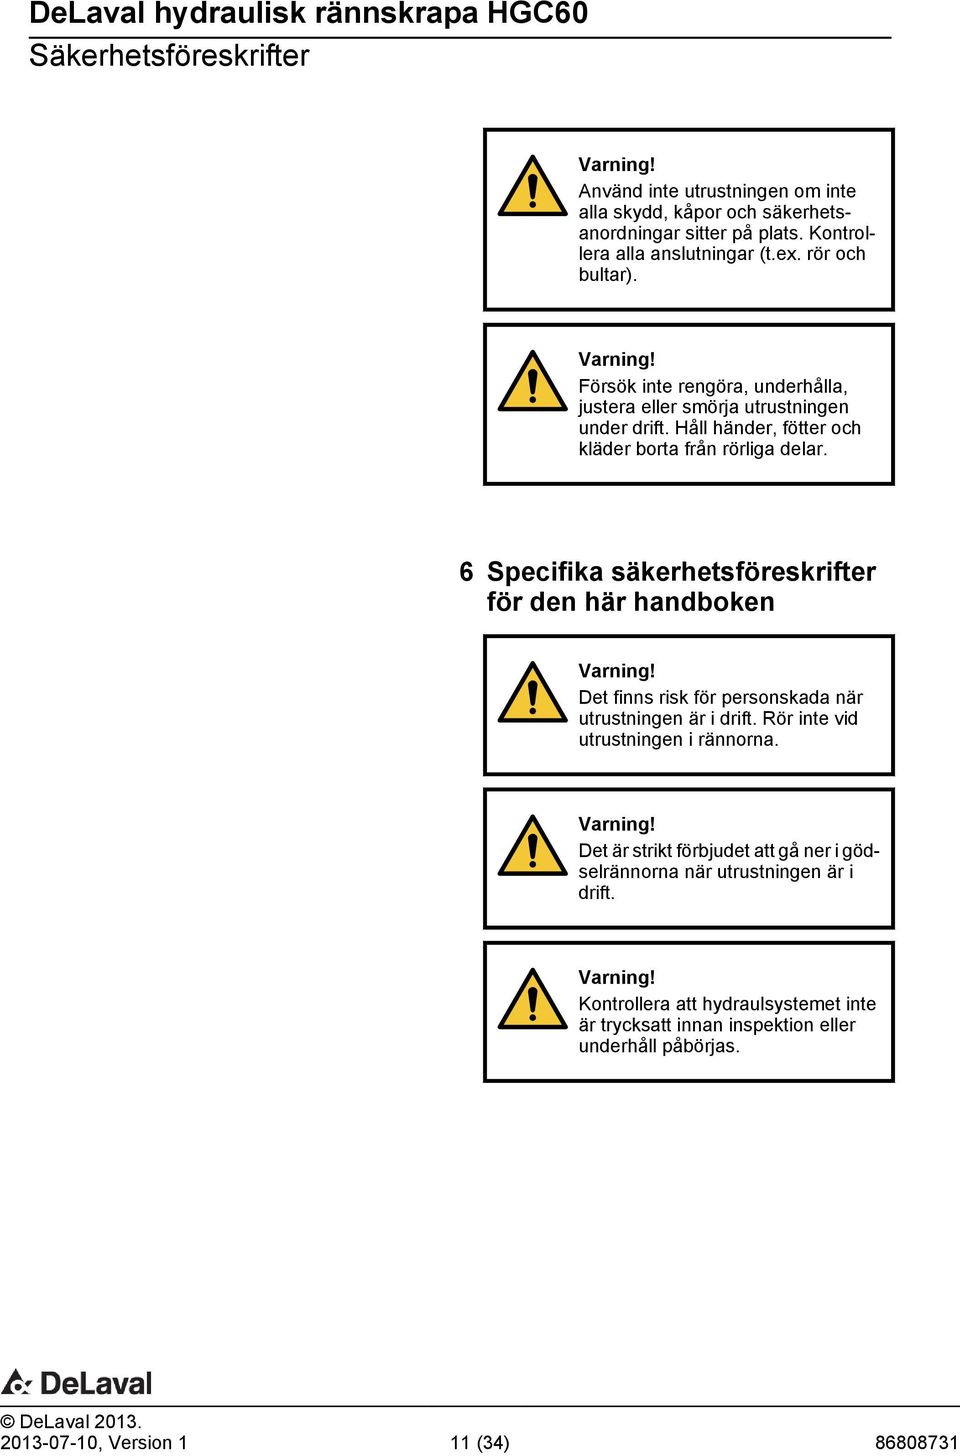 6 Specifika säkerhetsföreskrifter för den här handboken Varning! Det finns risk för personskada när utrustningen är i drift. Rör inte vid utrustningen i rännorna. Varning! Det är strikt förbjudet att gå ner i gödselrännorna när utrustningen är i drift.